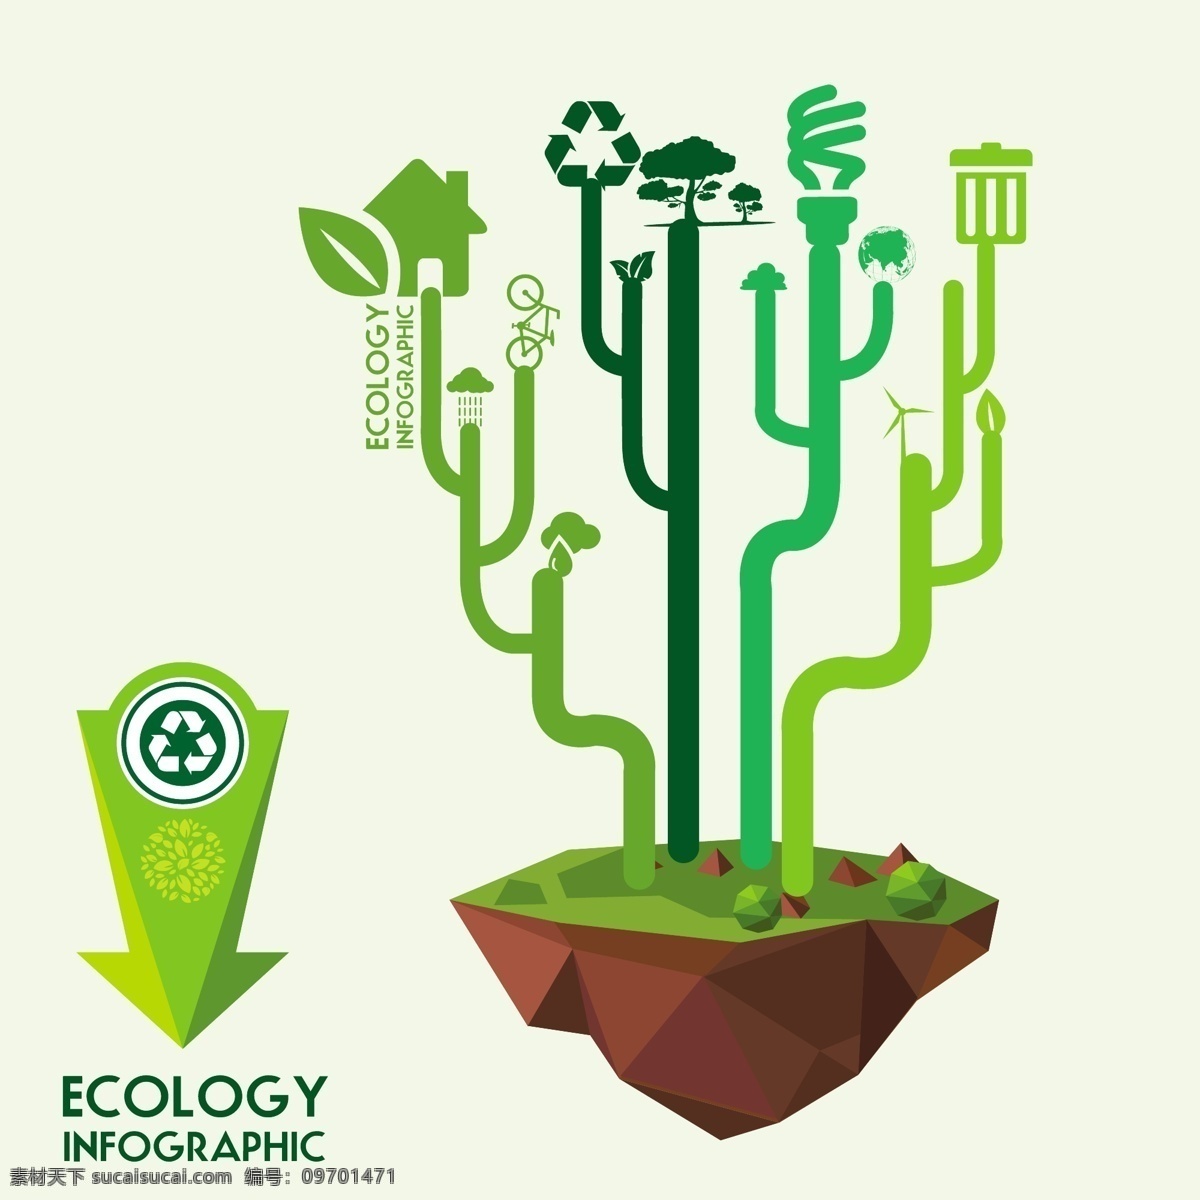 生态信息图表 环保 创意设计 目录 eco 绿色 循环 能源 节能 低碳 生态 回收 环保标志 ppt素材 底纹背景 商务金融 商业插画 白色